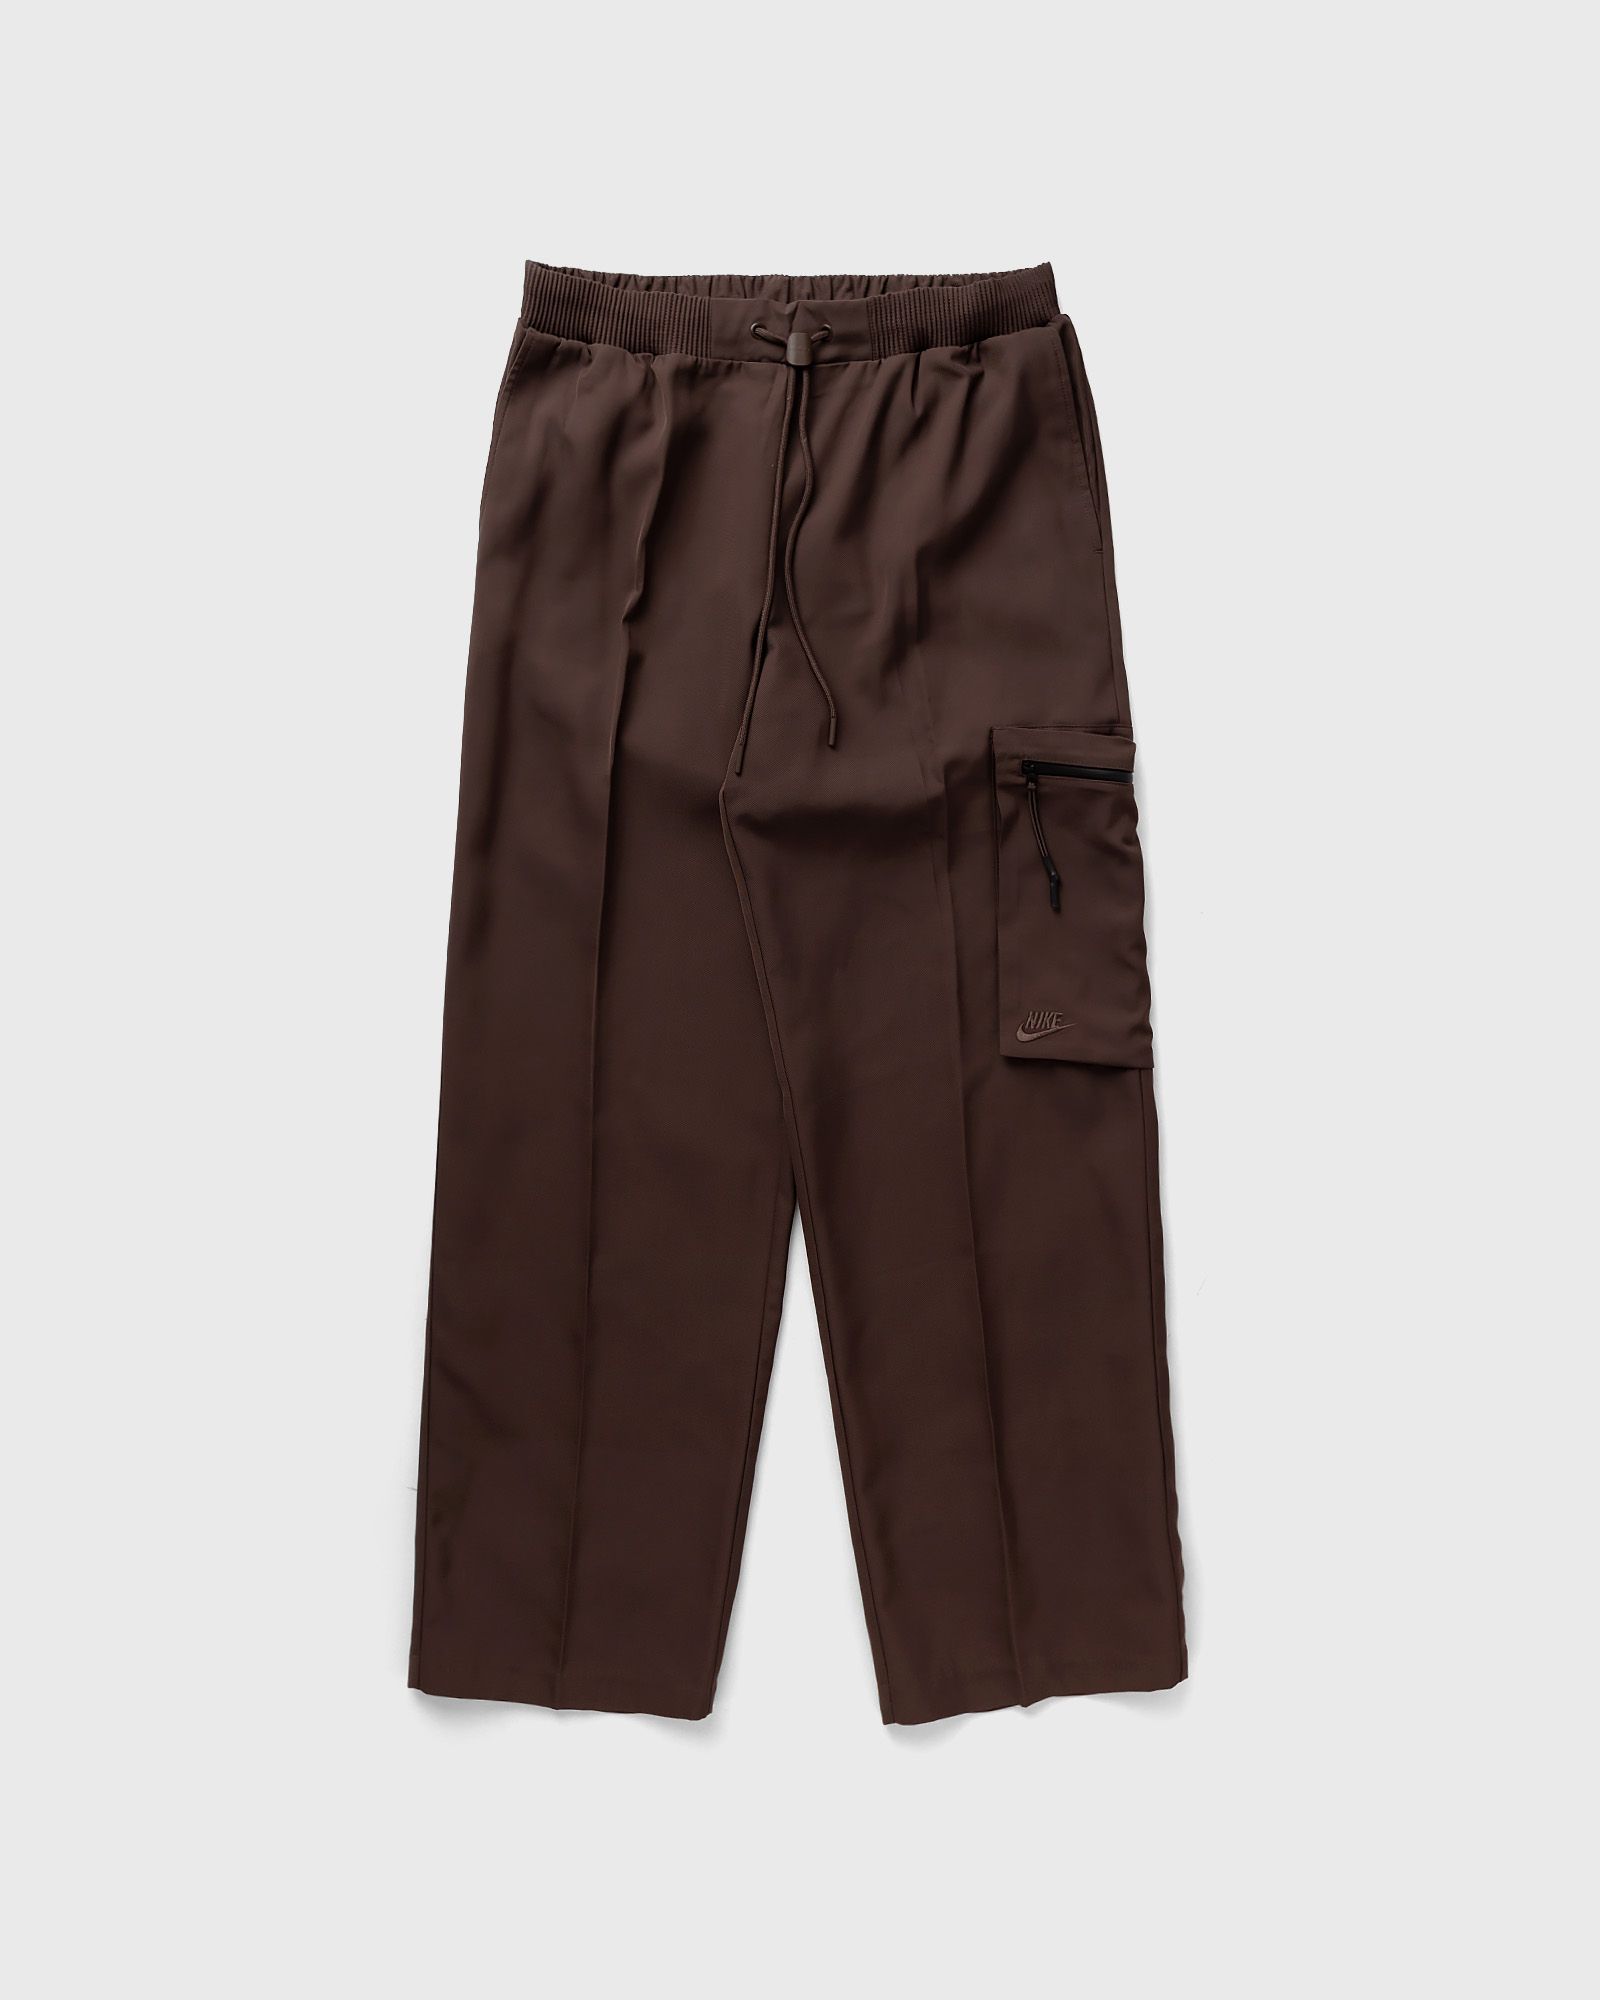 Nike - sportswear tech pack men's woven utility pants men cargo pants brown in größe:xl